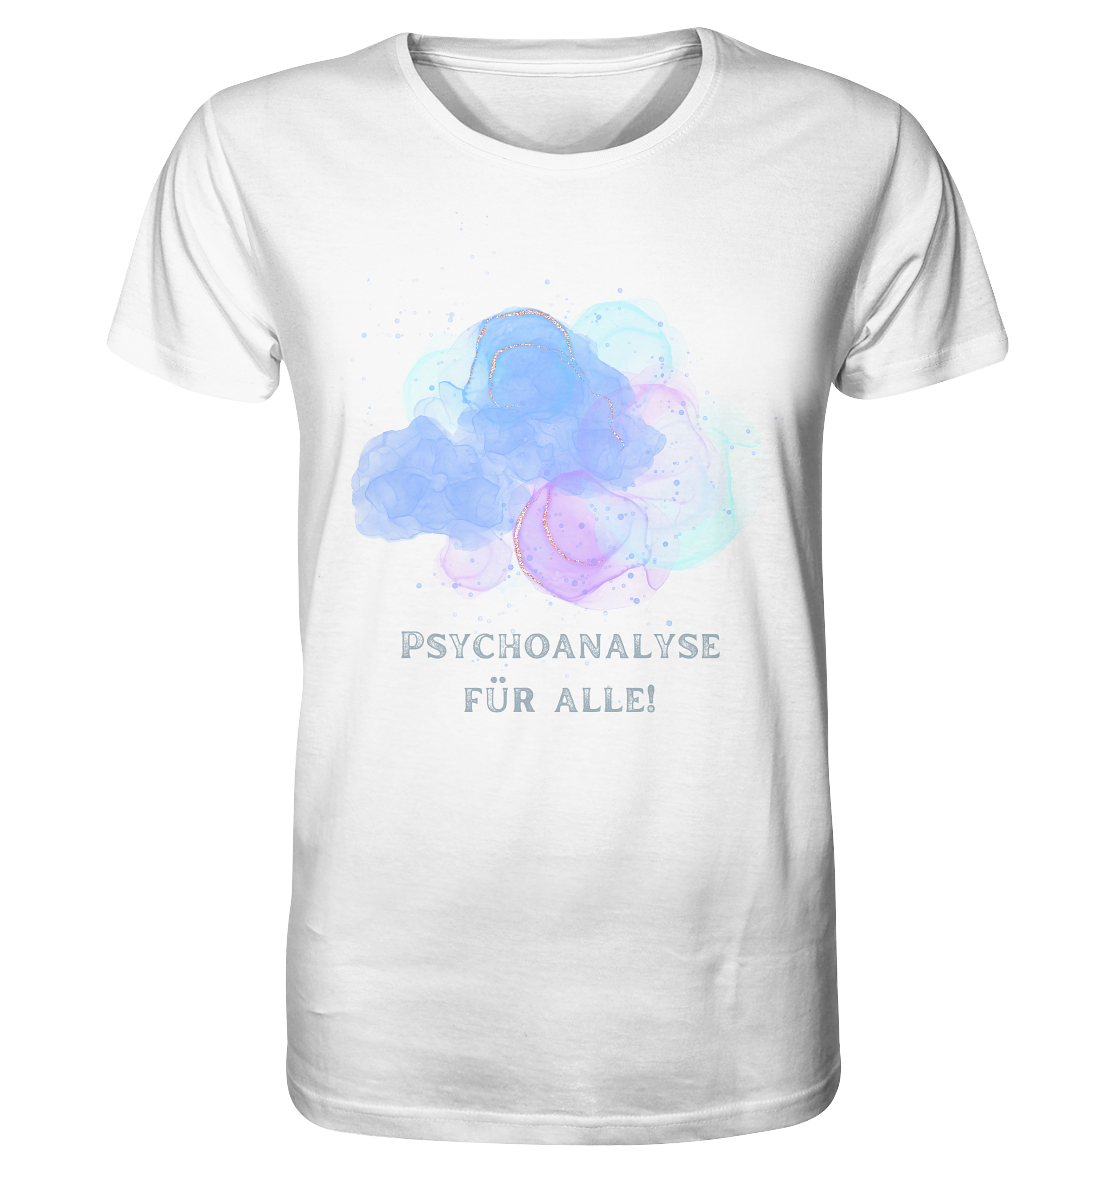 Ein weißes Artbookings/Shirtigo-T-Shirt mit der Aufschrift T-Shirt mit Spruch: Psychoanalyse für alle! | Bio-Shirt für Mental Health.